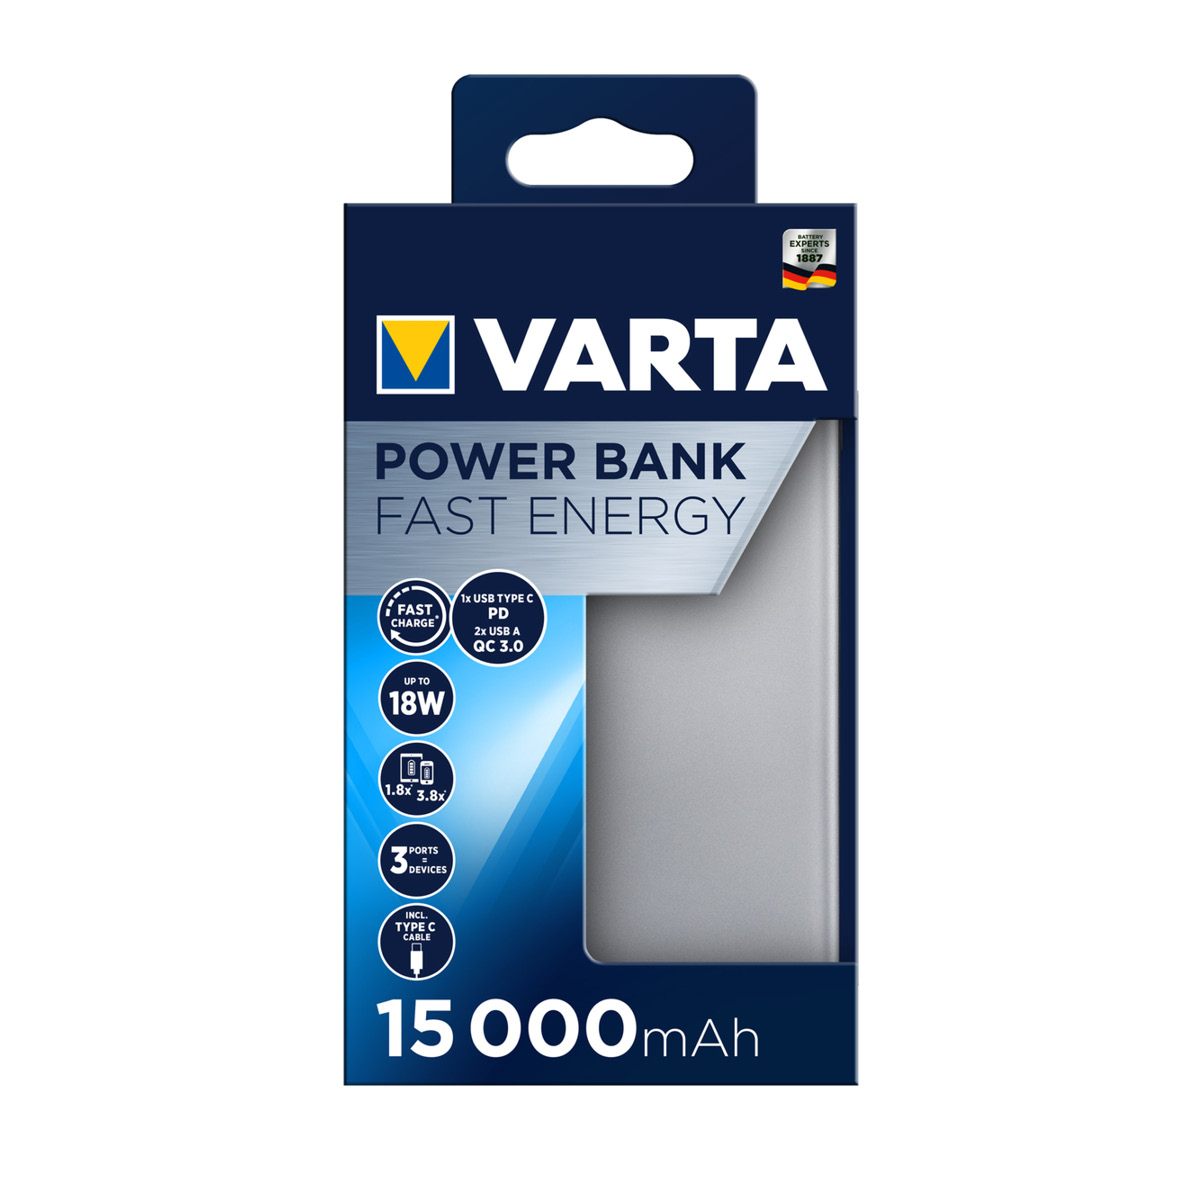 Varta Powerbank Fast Energy 15000 mAh